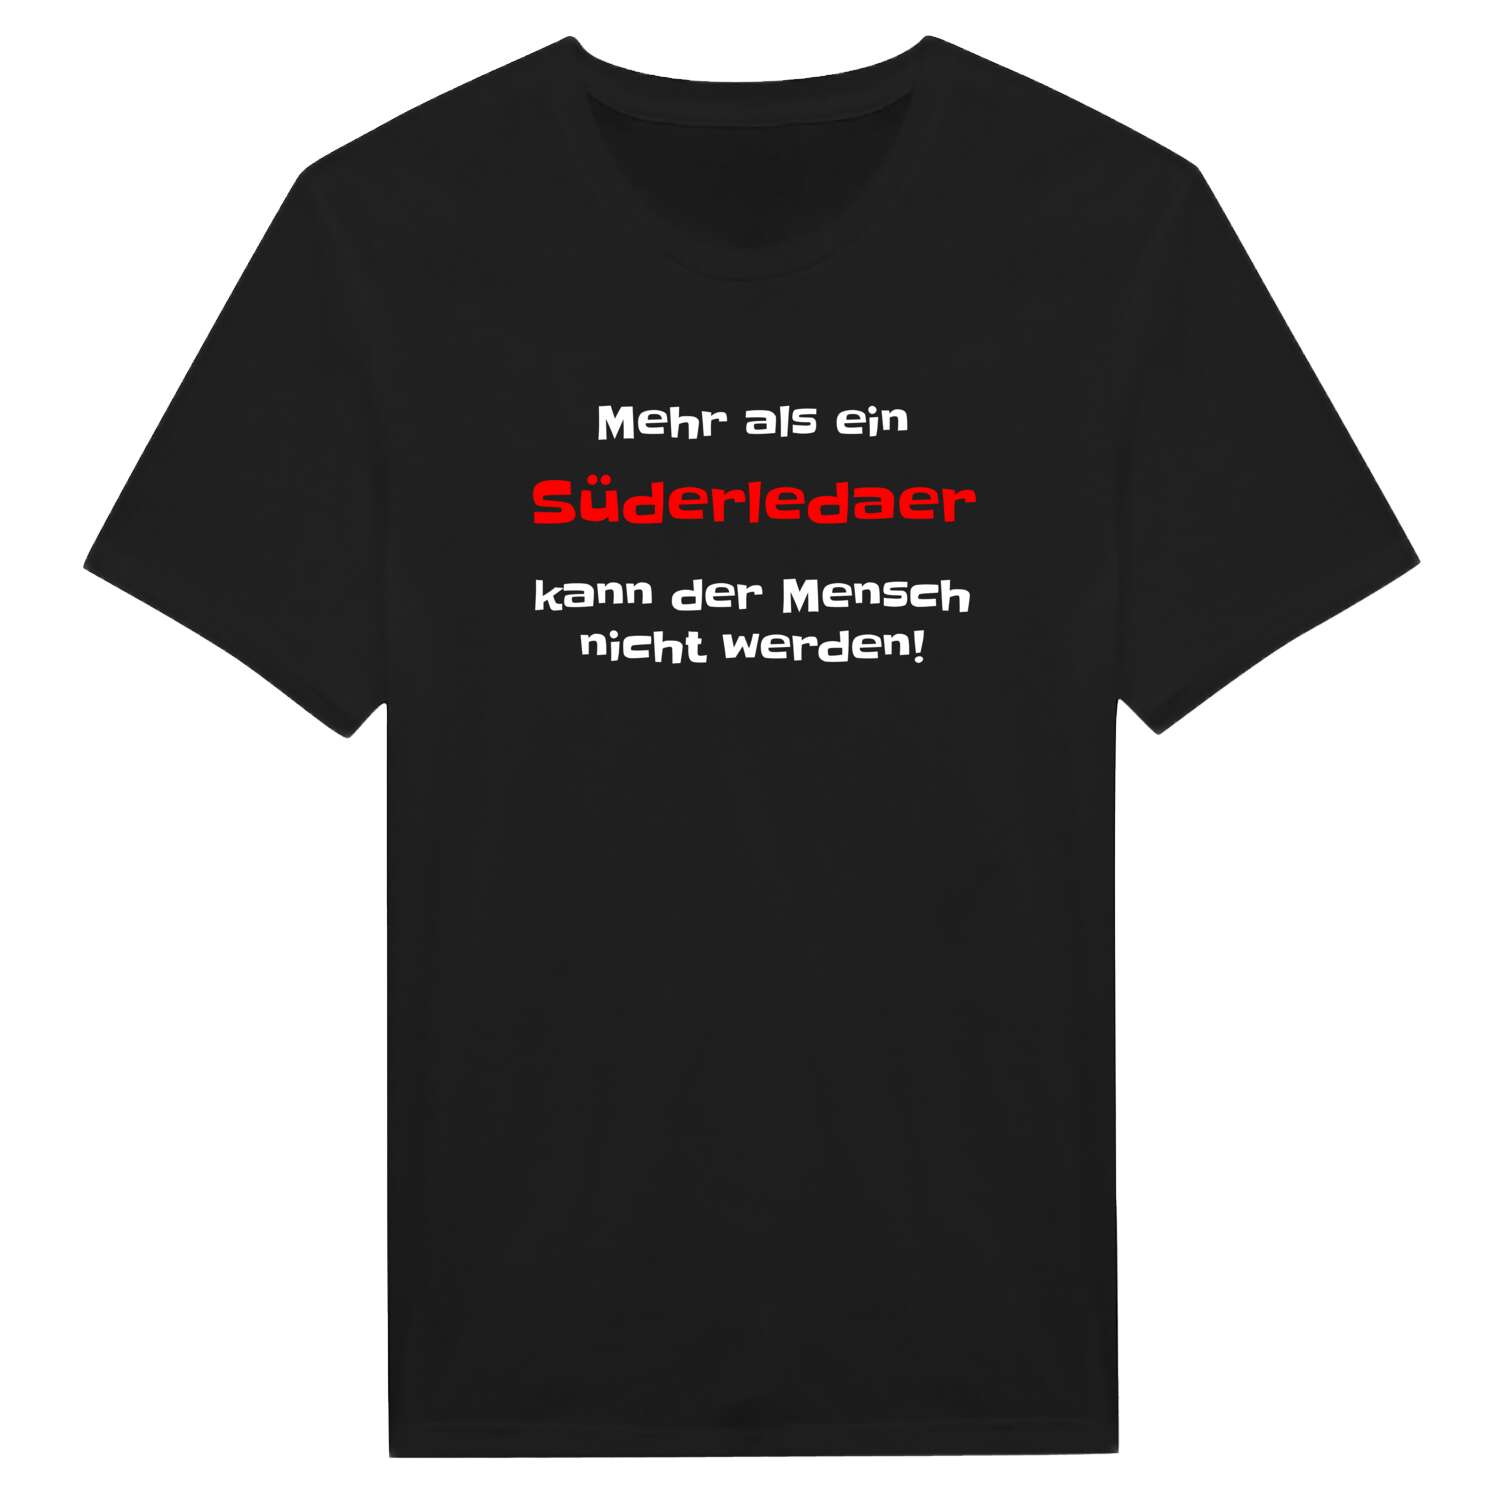 Süderleda T-Shirt »Mehr als ein«